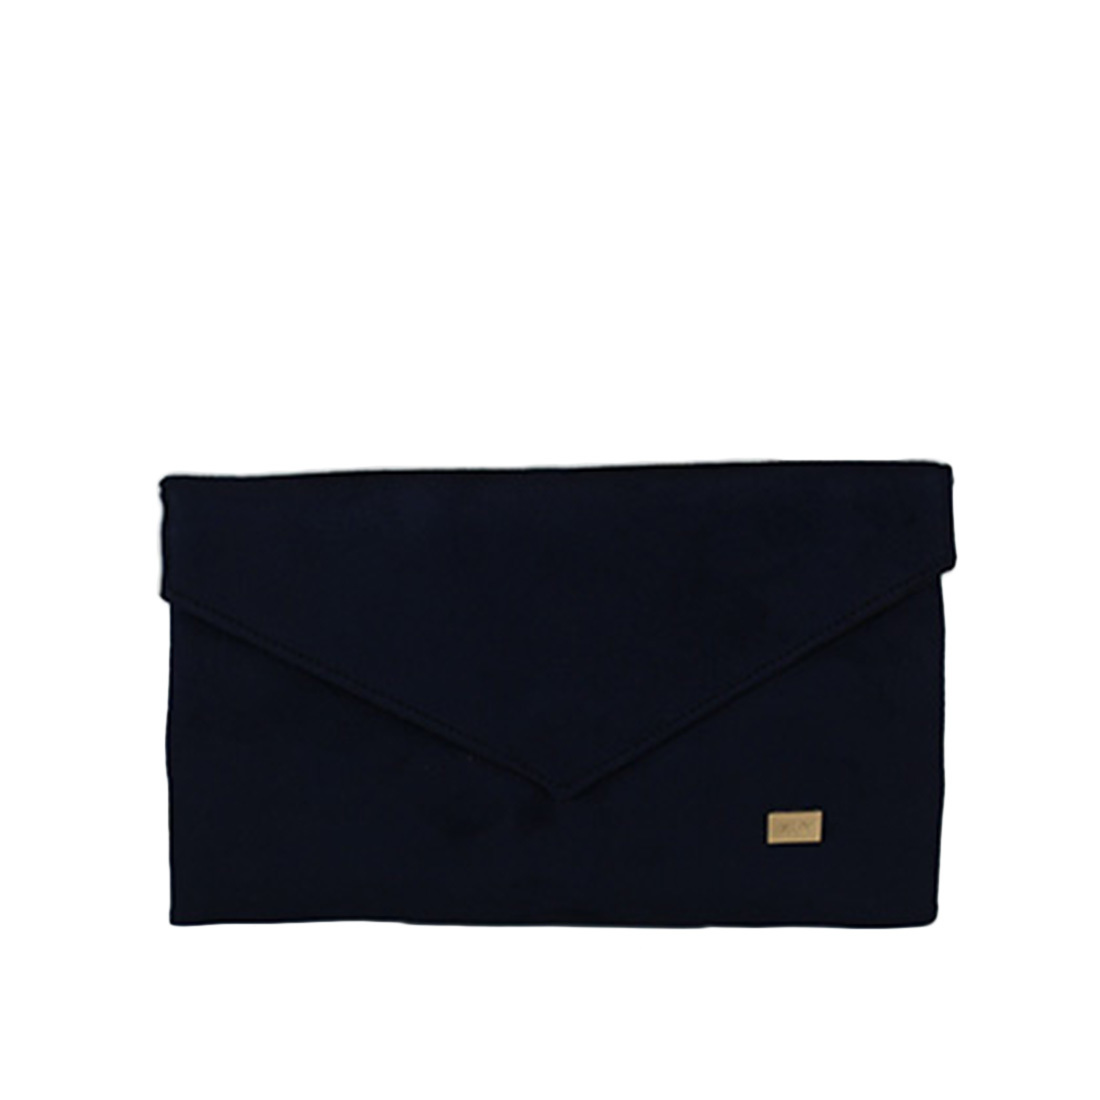 Plain envelope style clutch